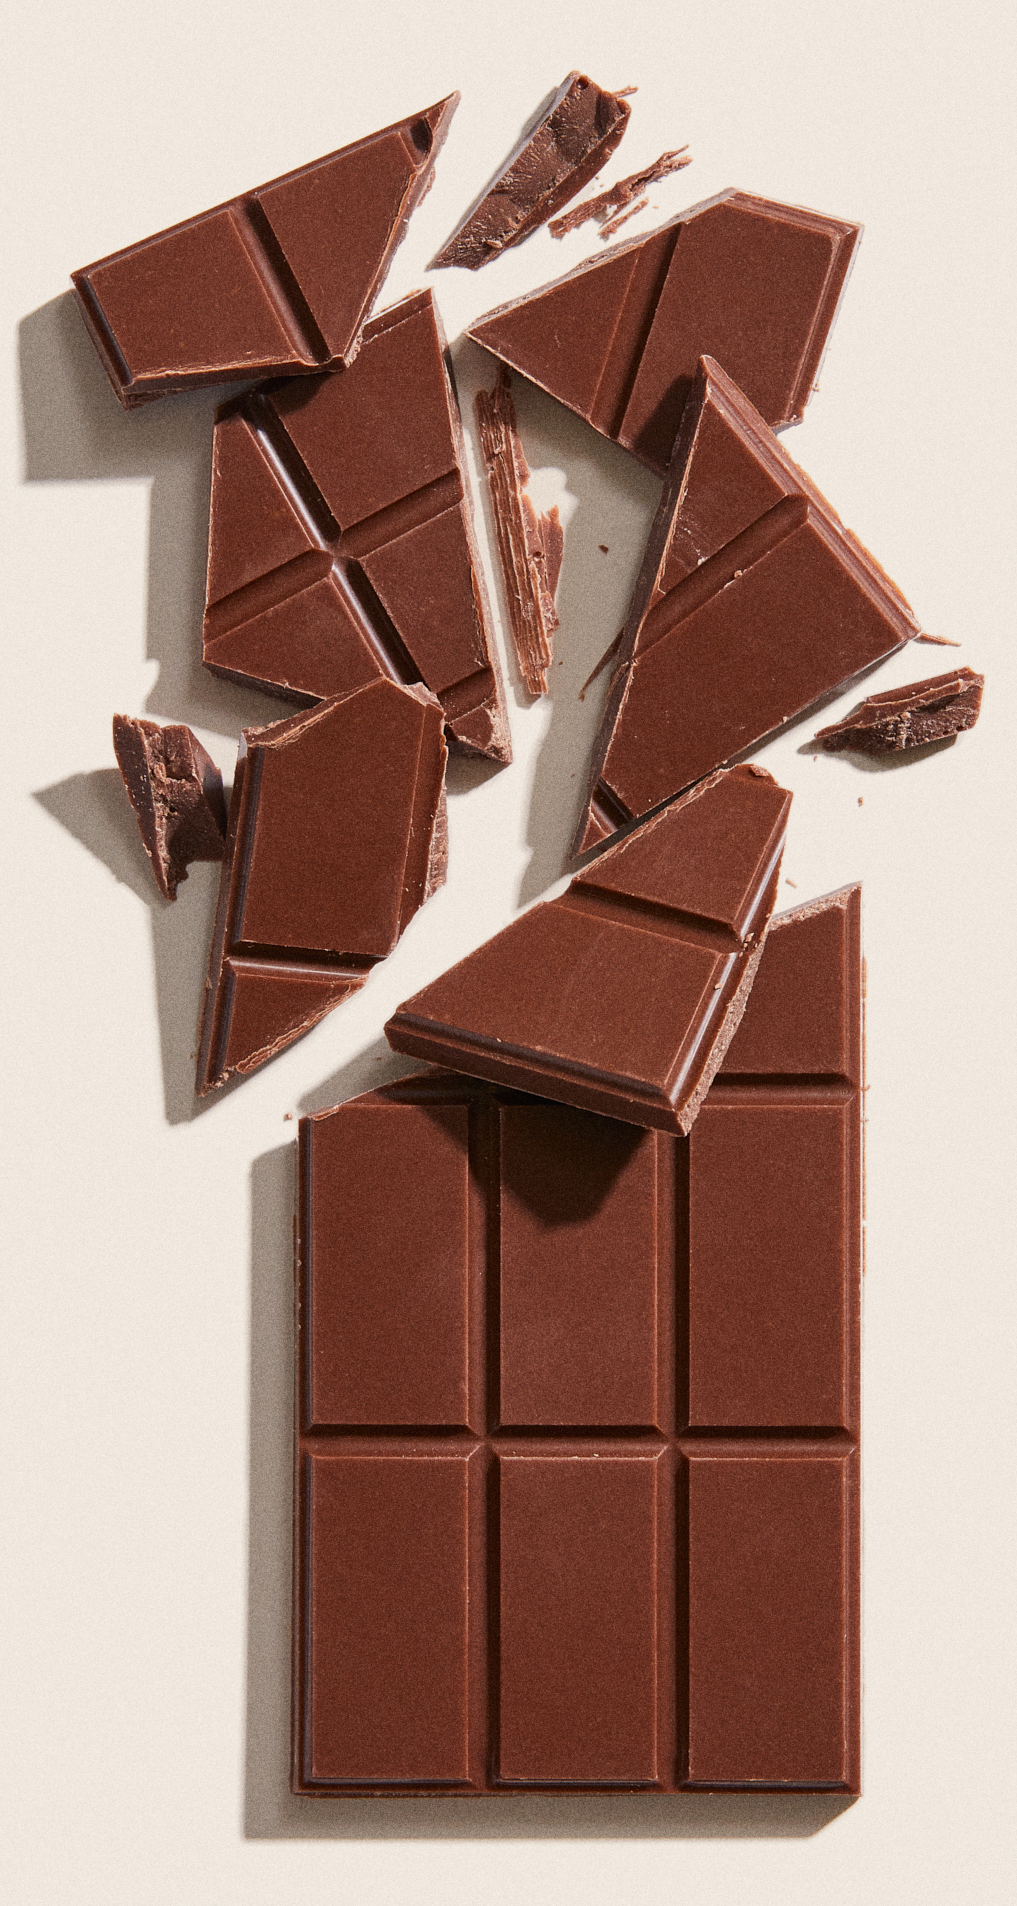 Chocolate partnership chocolate